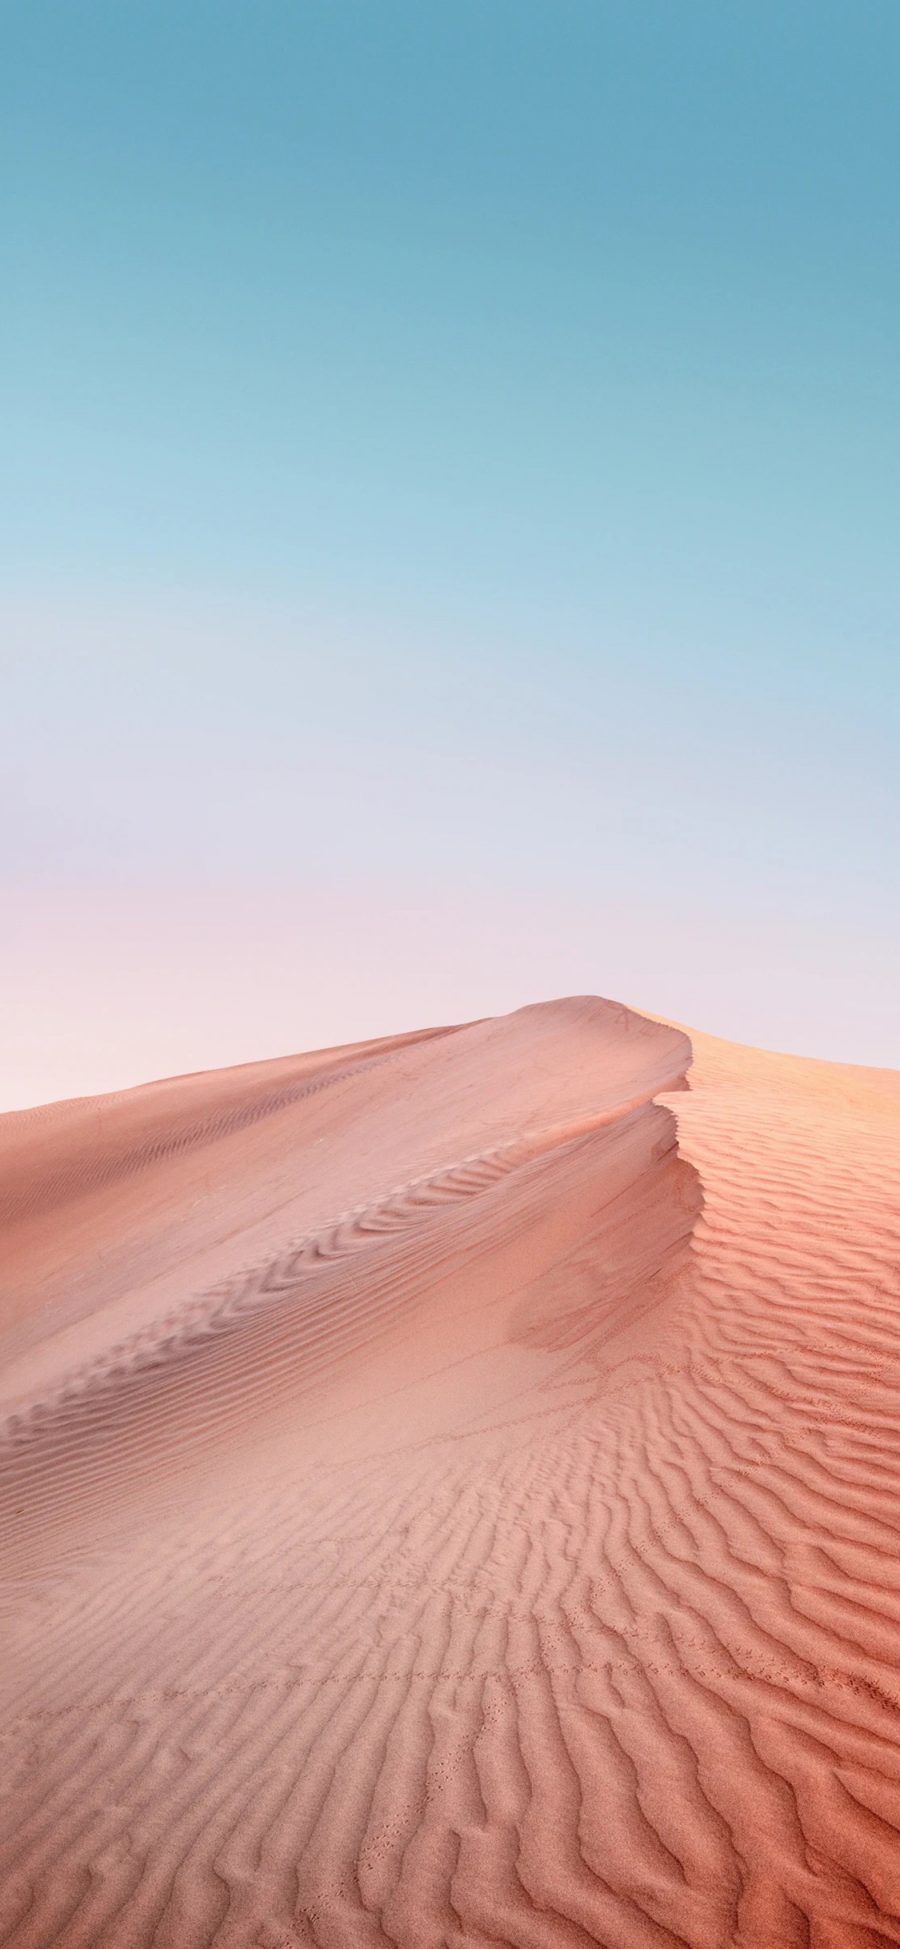 [2436×1125]沙漠 荒漠 纹路 大自然 苹果手机壁纸图片